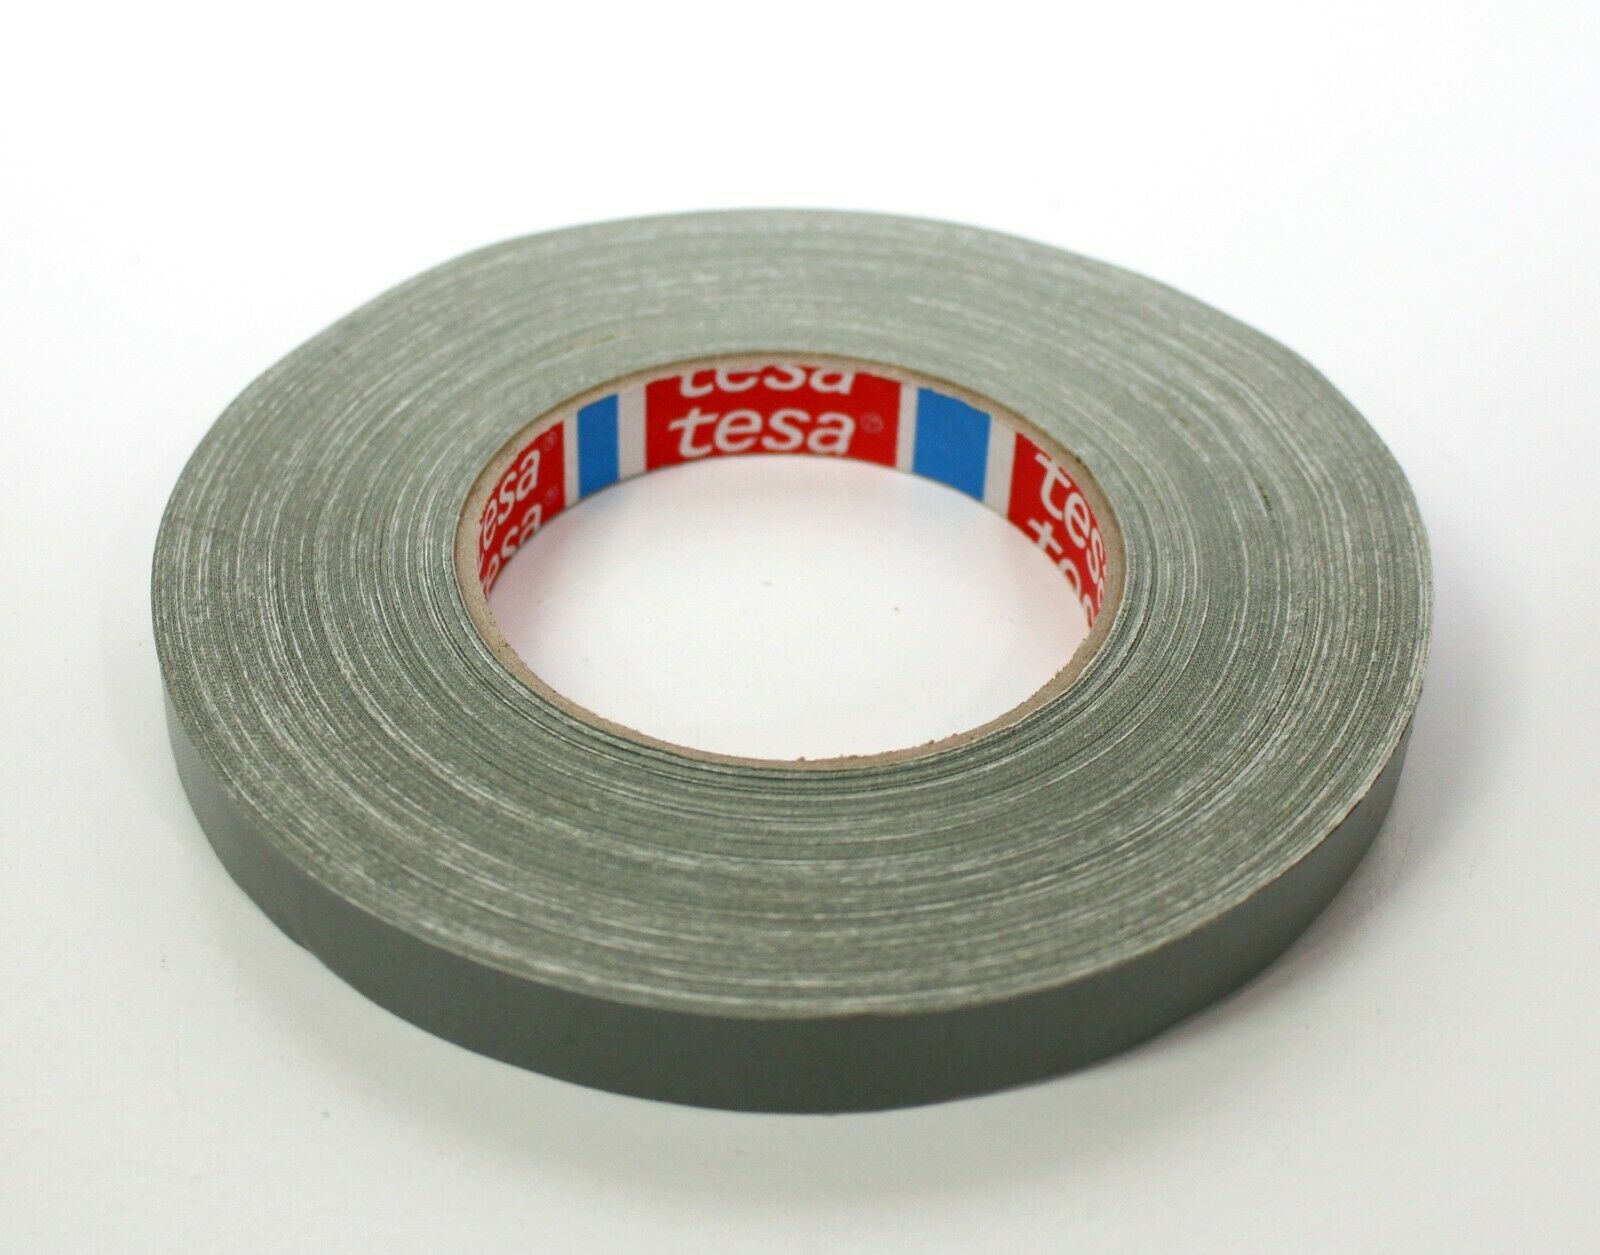 TESA 4657 Cinta adhesiva de tela resistente a altas temperaturas 5/8 \"15 mm de ancho - 55 yardas